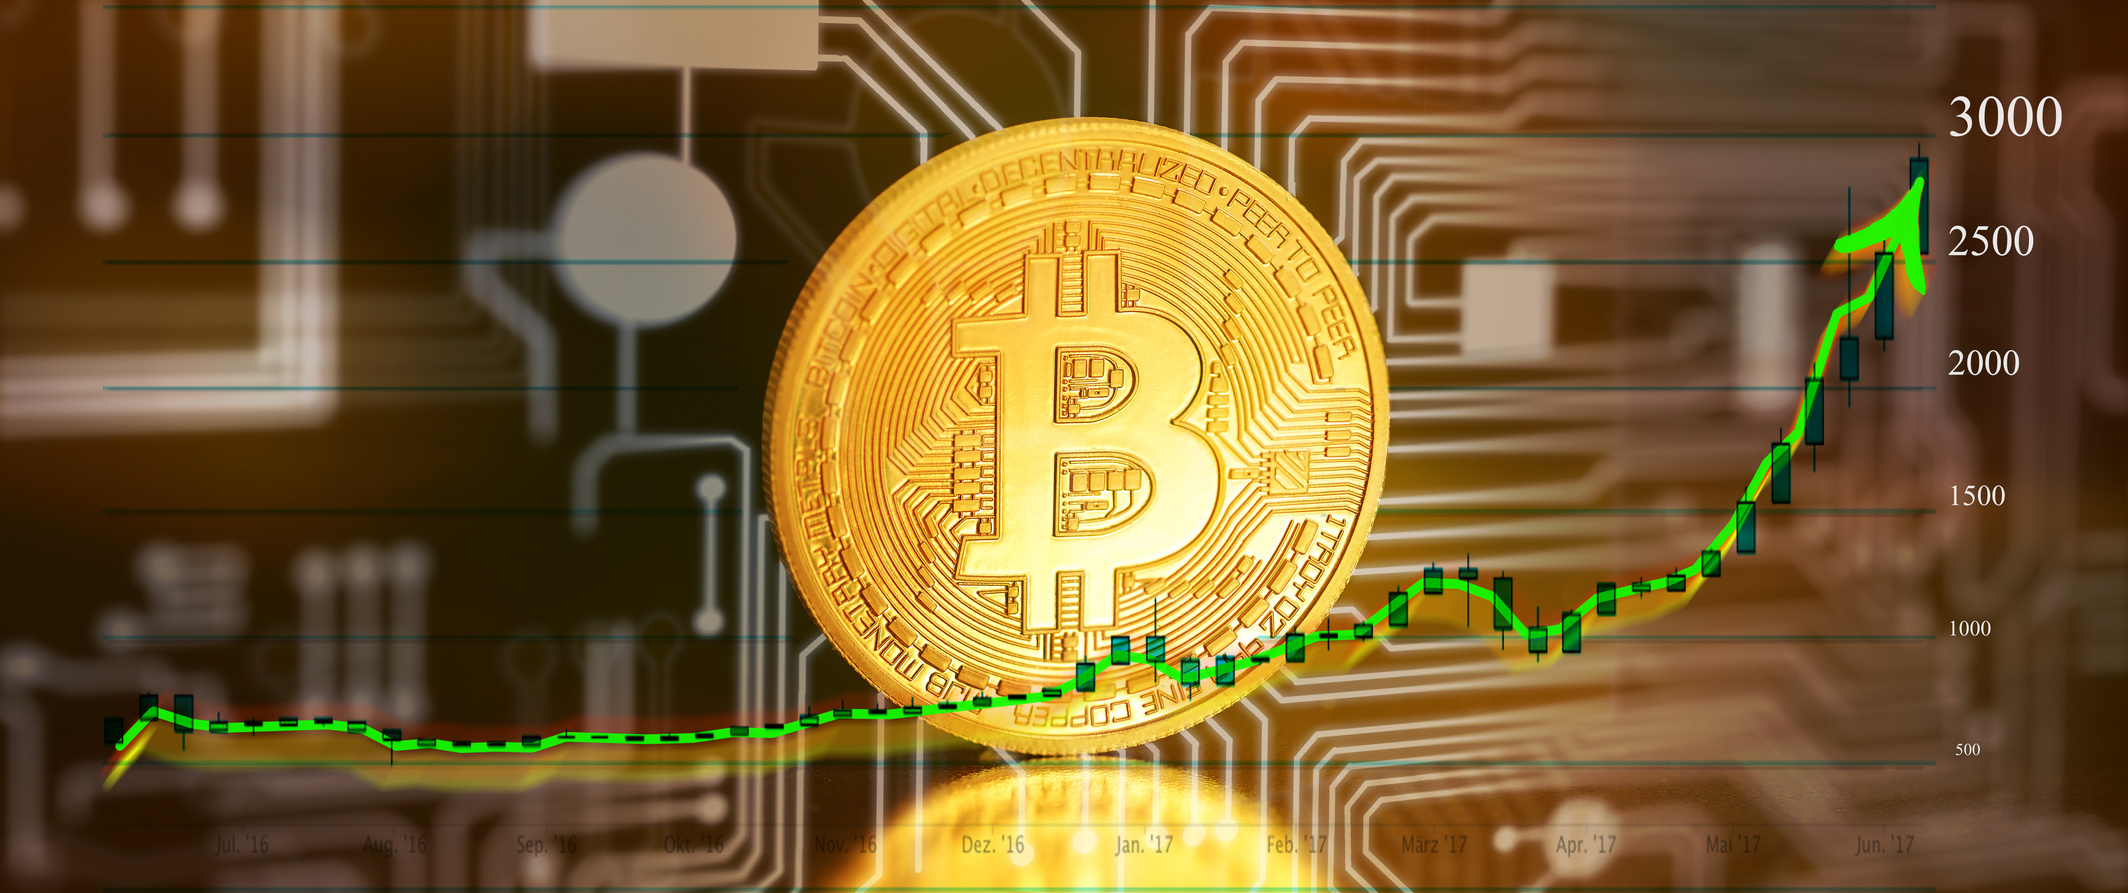 mit bitcoins schnell geld verdienen bitcoin bargeld verdienen